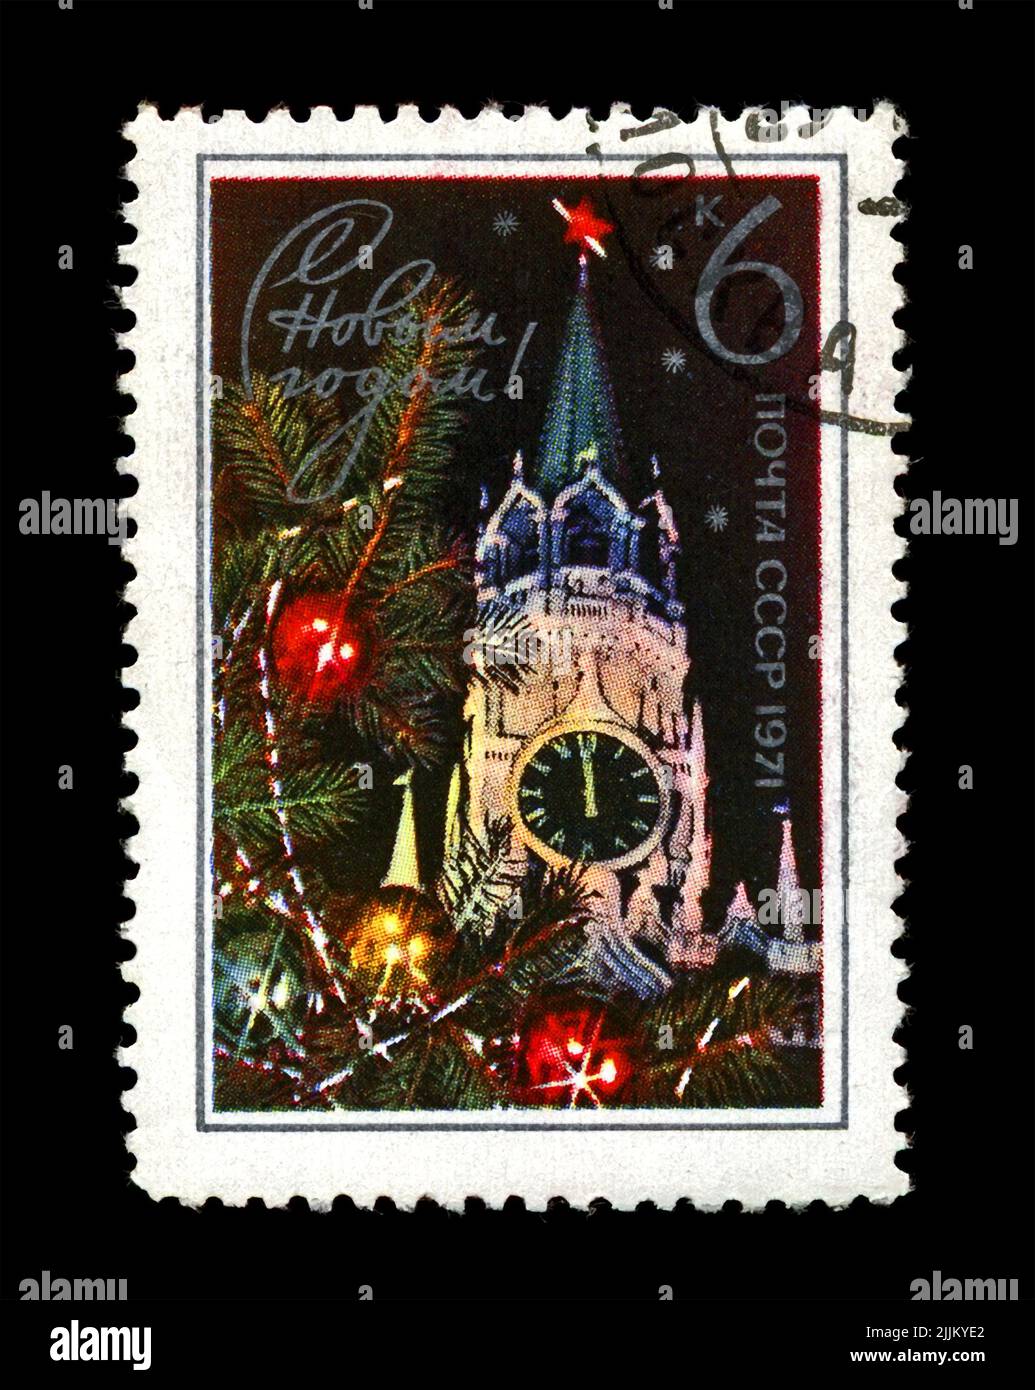 Torre del Cremlino con stella rossa, abeto decorato per Capodanno, circa 1970. Felice anno nuovo 1971 come testo. Cancellato timbro stampato in URSS Foto Stock